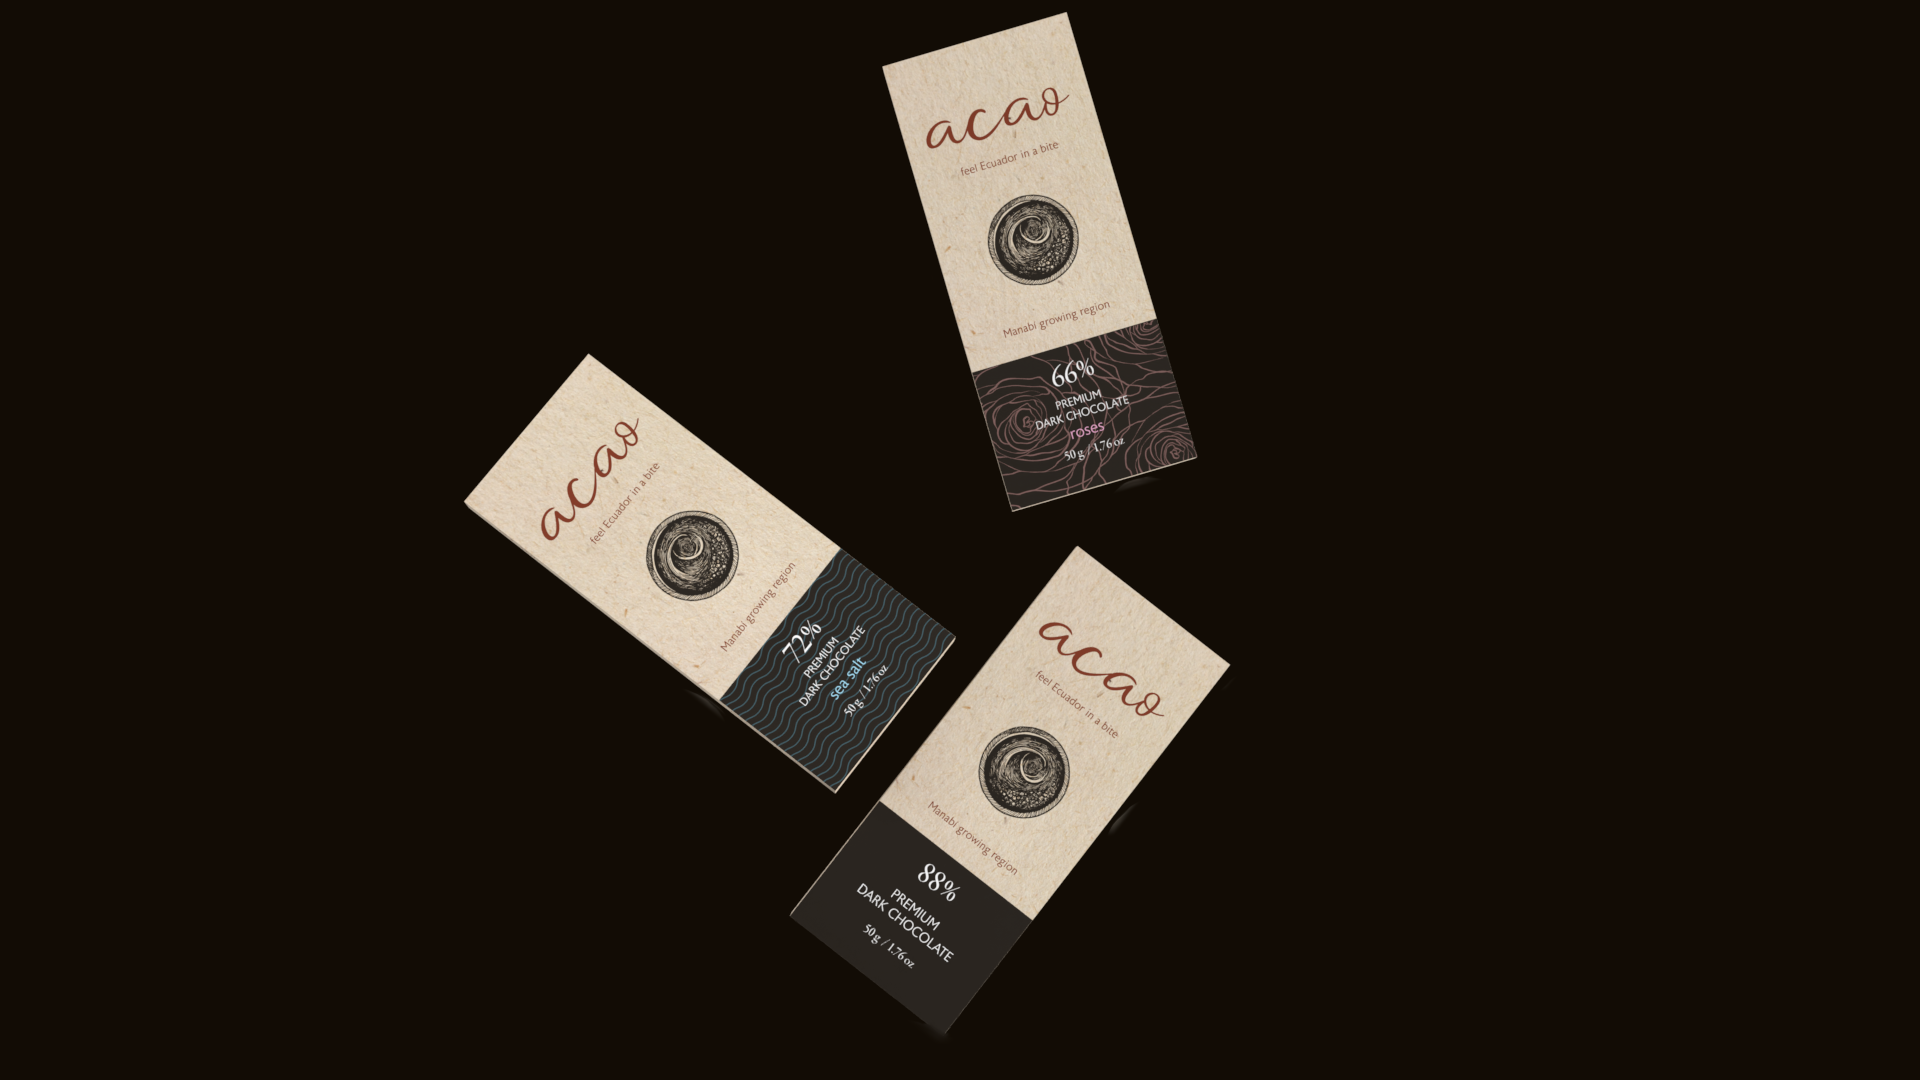 Diseño de cajas - Acao chocolate - Packaging - Soluciones de Firstrein